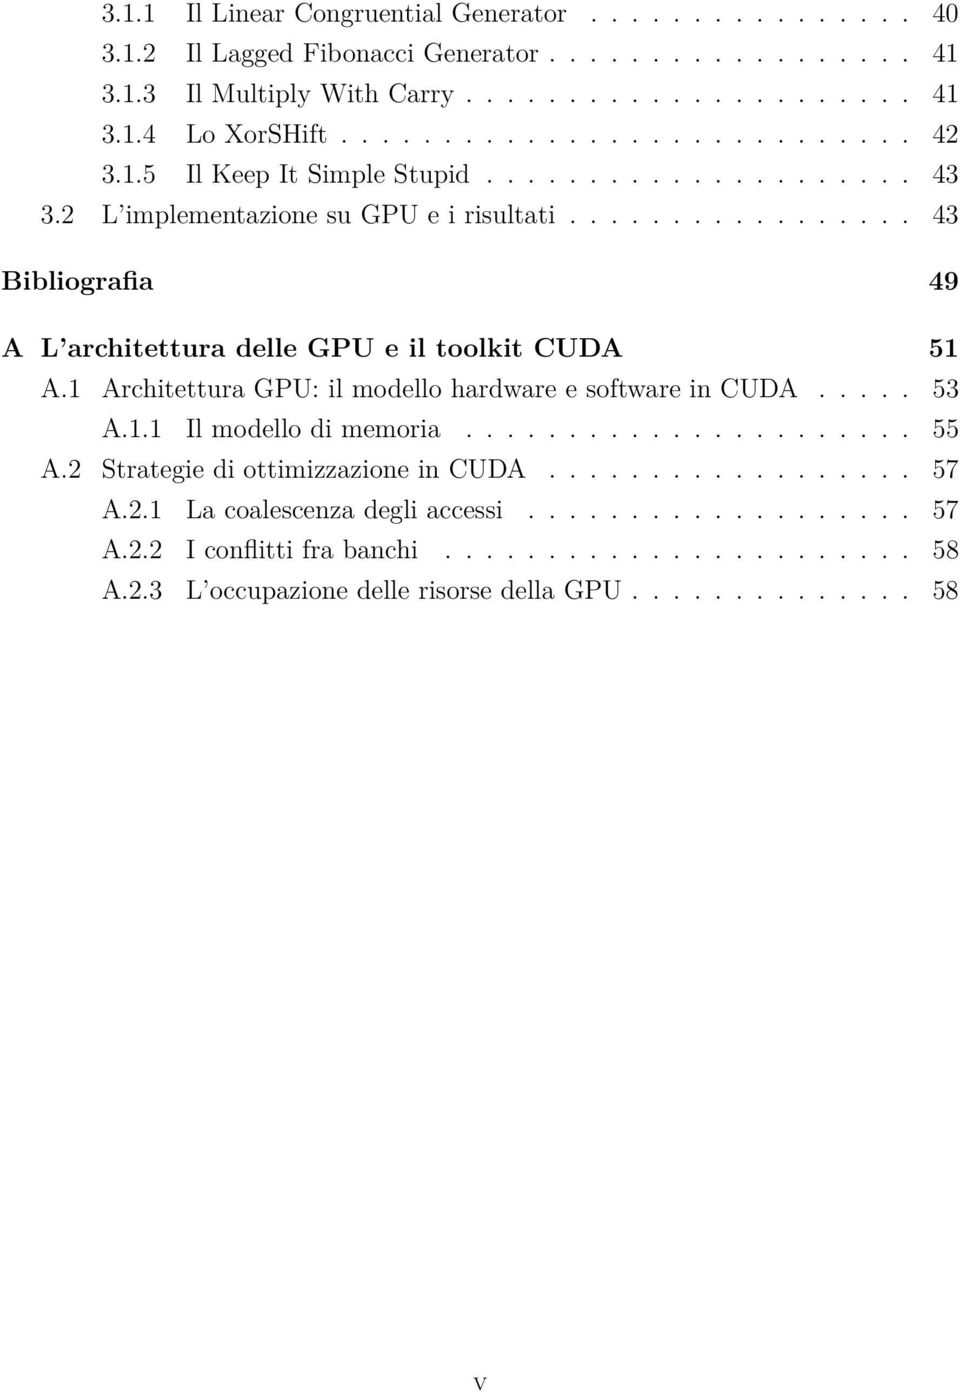 ................ 43 Bibliografia 49 A L architettura delle GPU e il toolkit CUDA 51 A.1 Architettura GPU: il modello hardware e software in CUDA..... 53 A.1.1 Il modello di memoria...................... 55 A.